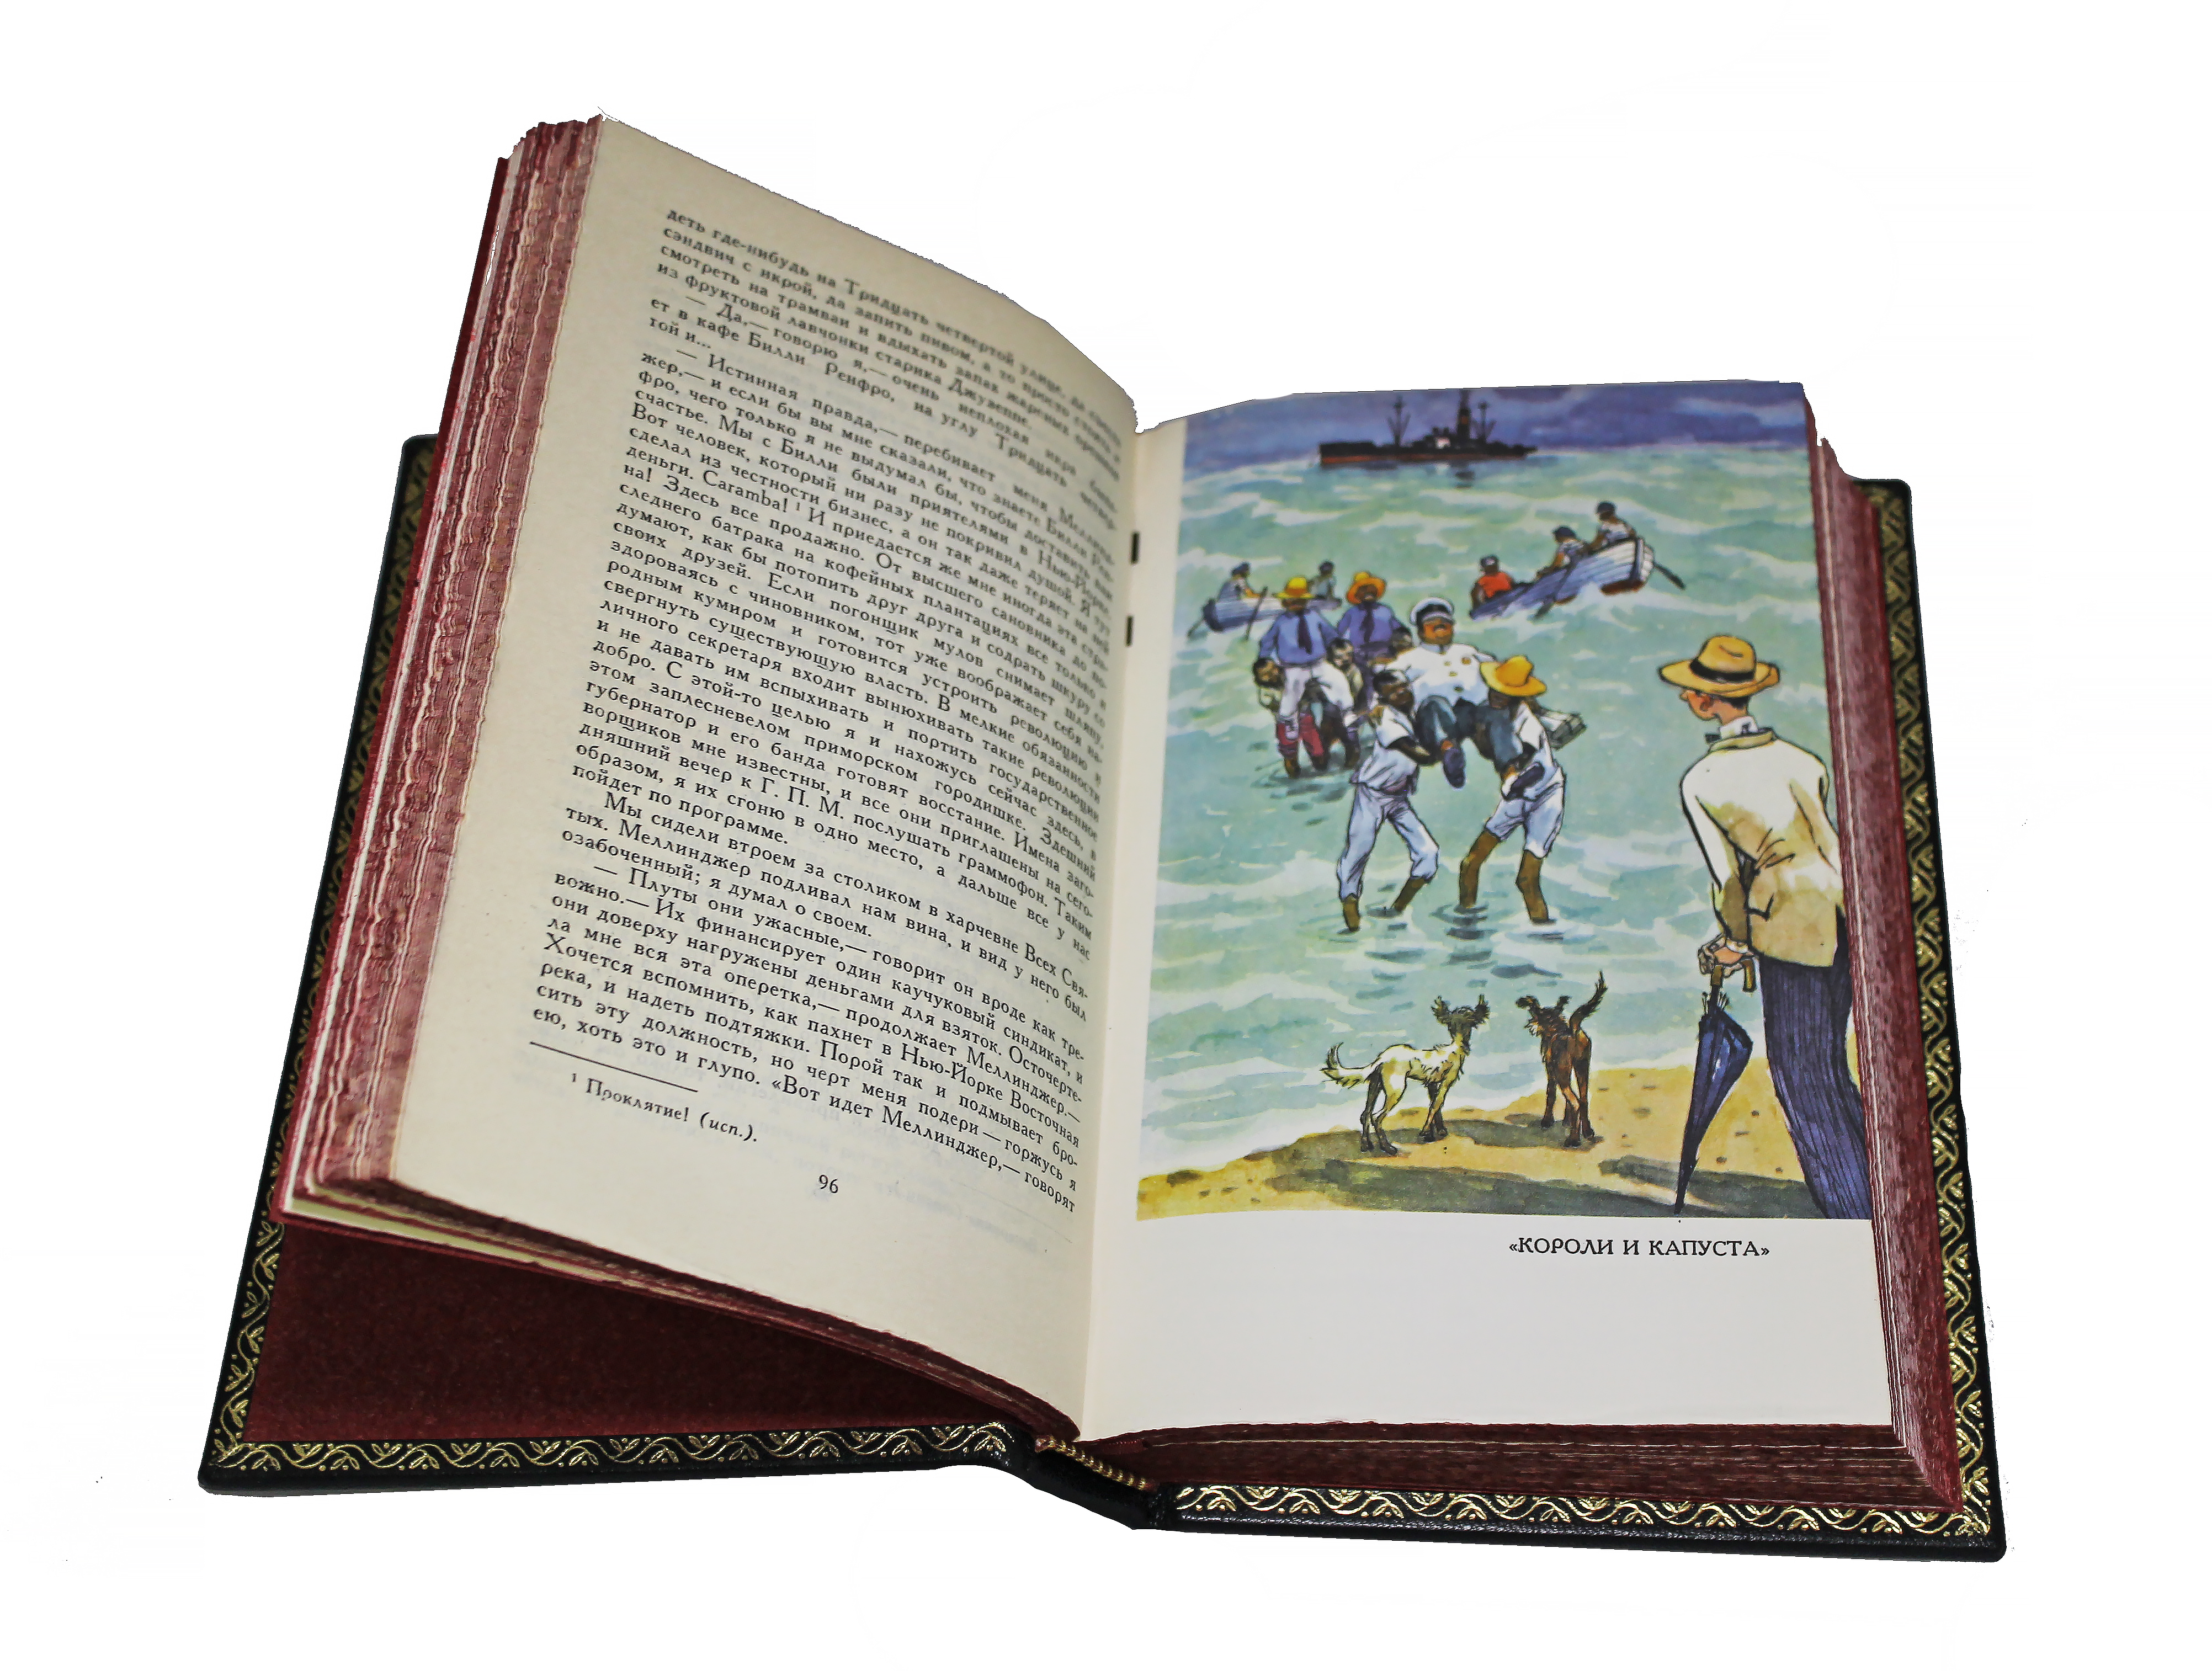 Собрание сочинений O. Генри в 3 томах в кожаном переплете с тиснением цветной фольгой